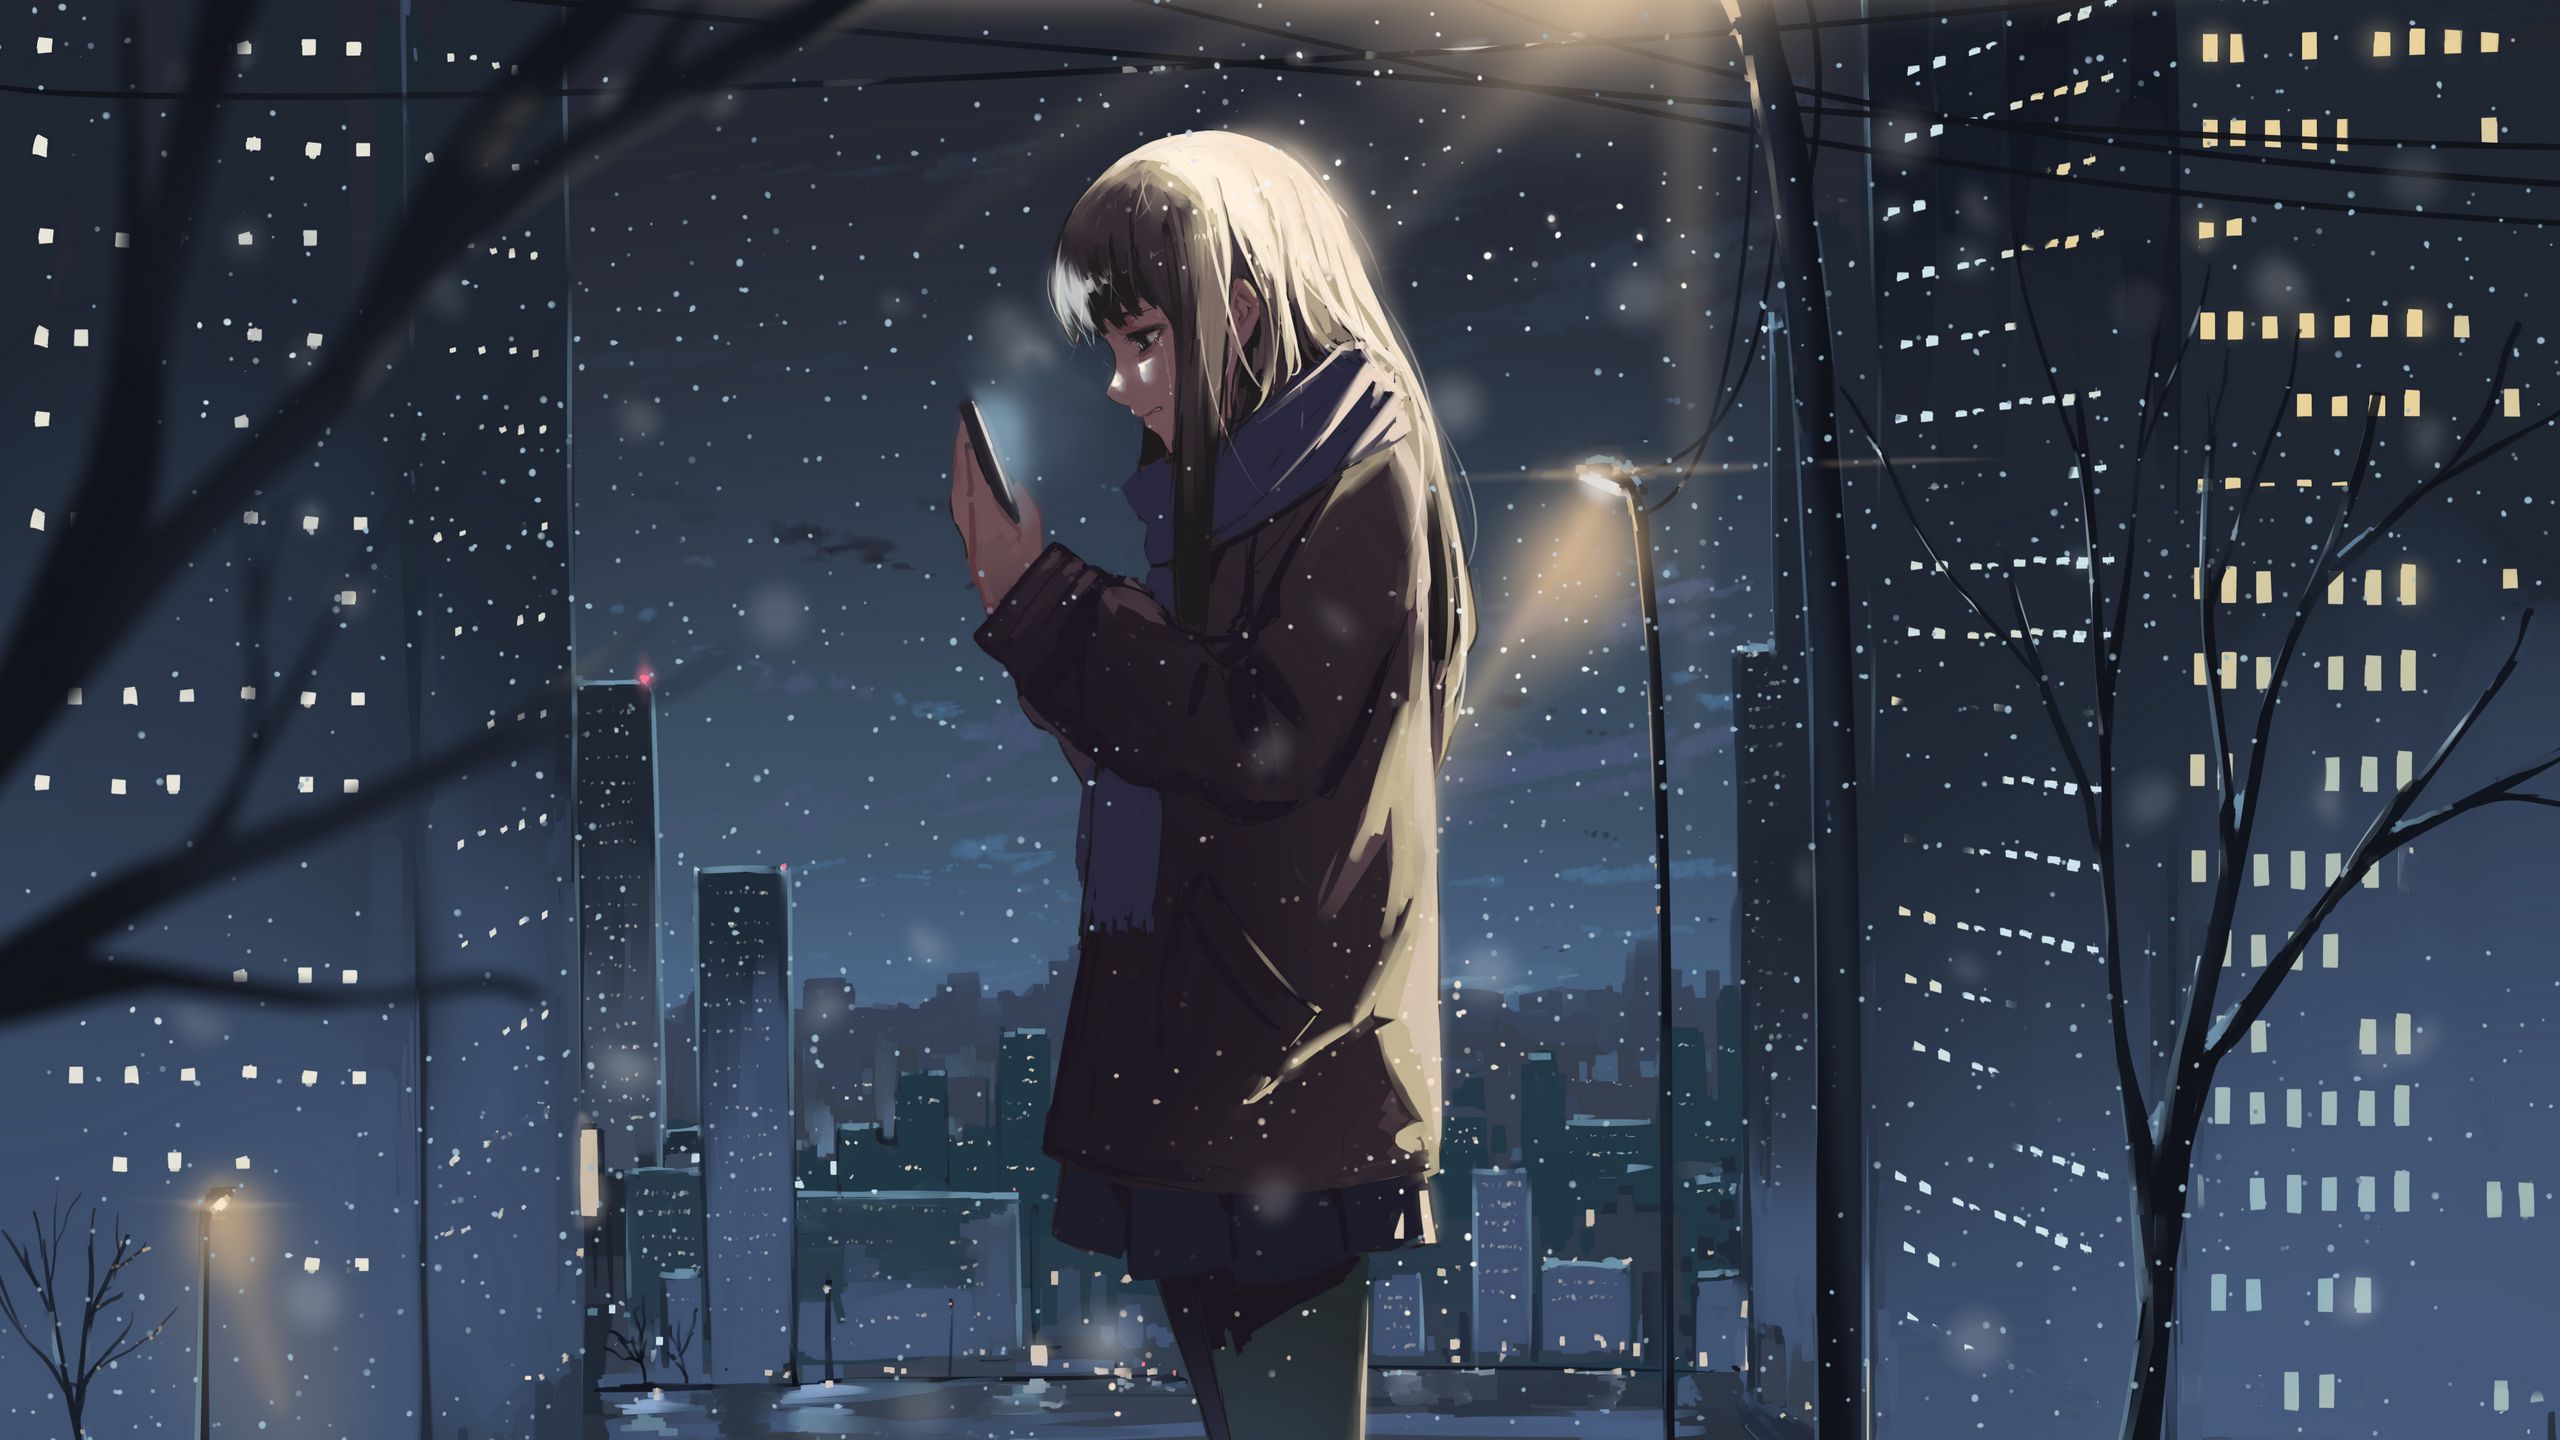 Anime girl wallpaper - Hình nền anime cô gái đáng yêu sẽ mang đến cho bạn cảm giác ngọt ngào và ấm áp. Từ xinh đẹp cho đến quyến rũ, anime cô gái là nguồn cảm hứng vô tận cho bất kỳ ai. Tải ngay để trang trí màn hình điện thoại hoặc máy tính của mình!